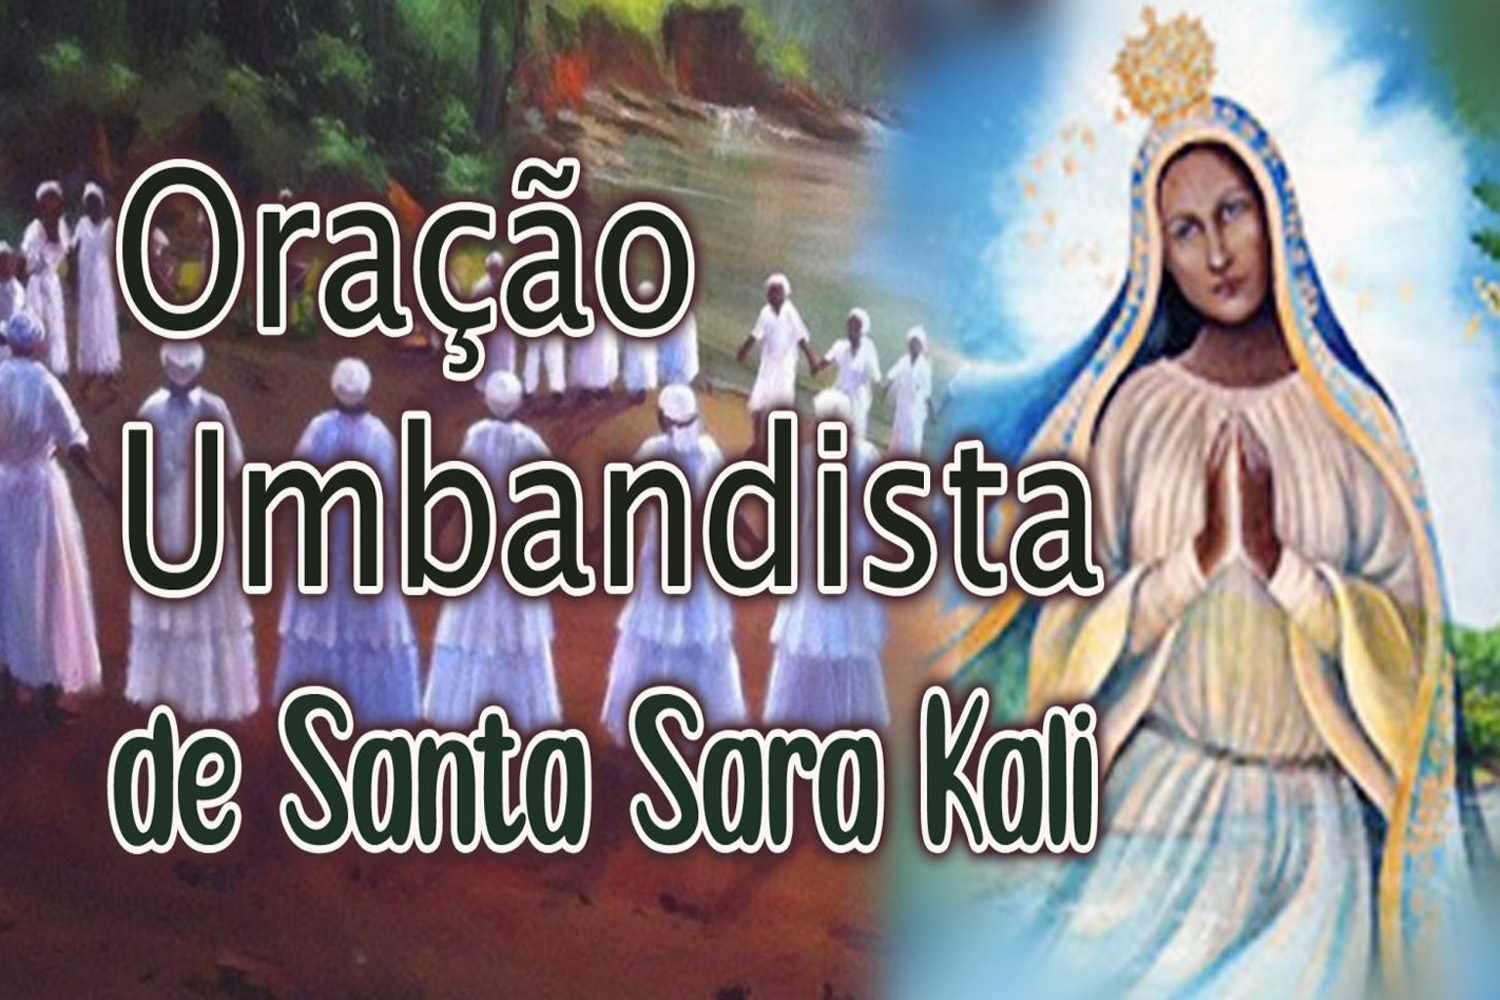 Oração Umbandista de Santa Sara Kali